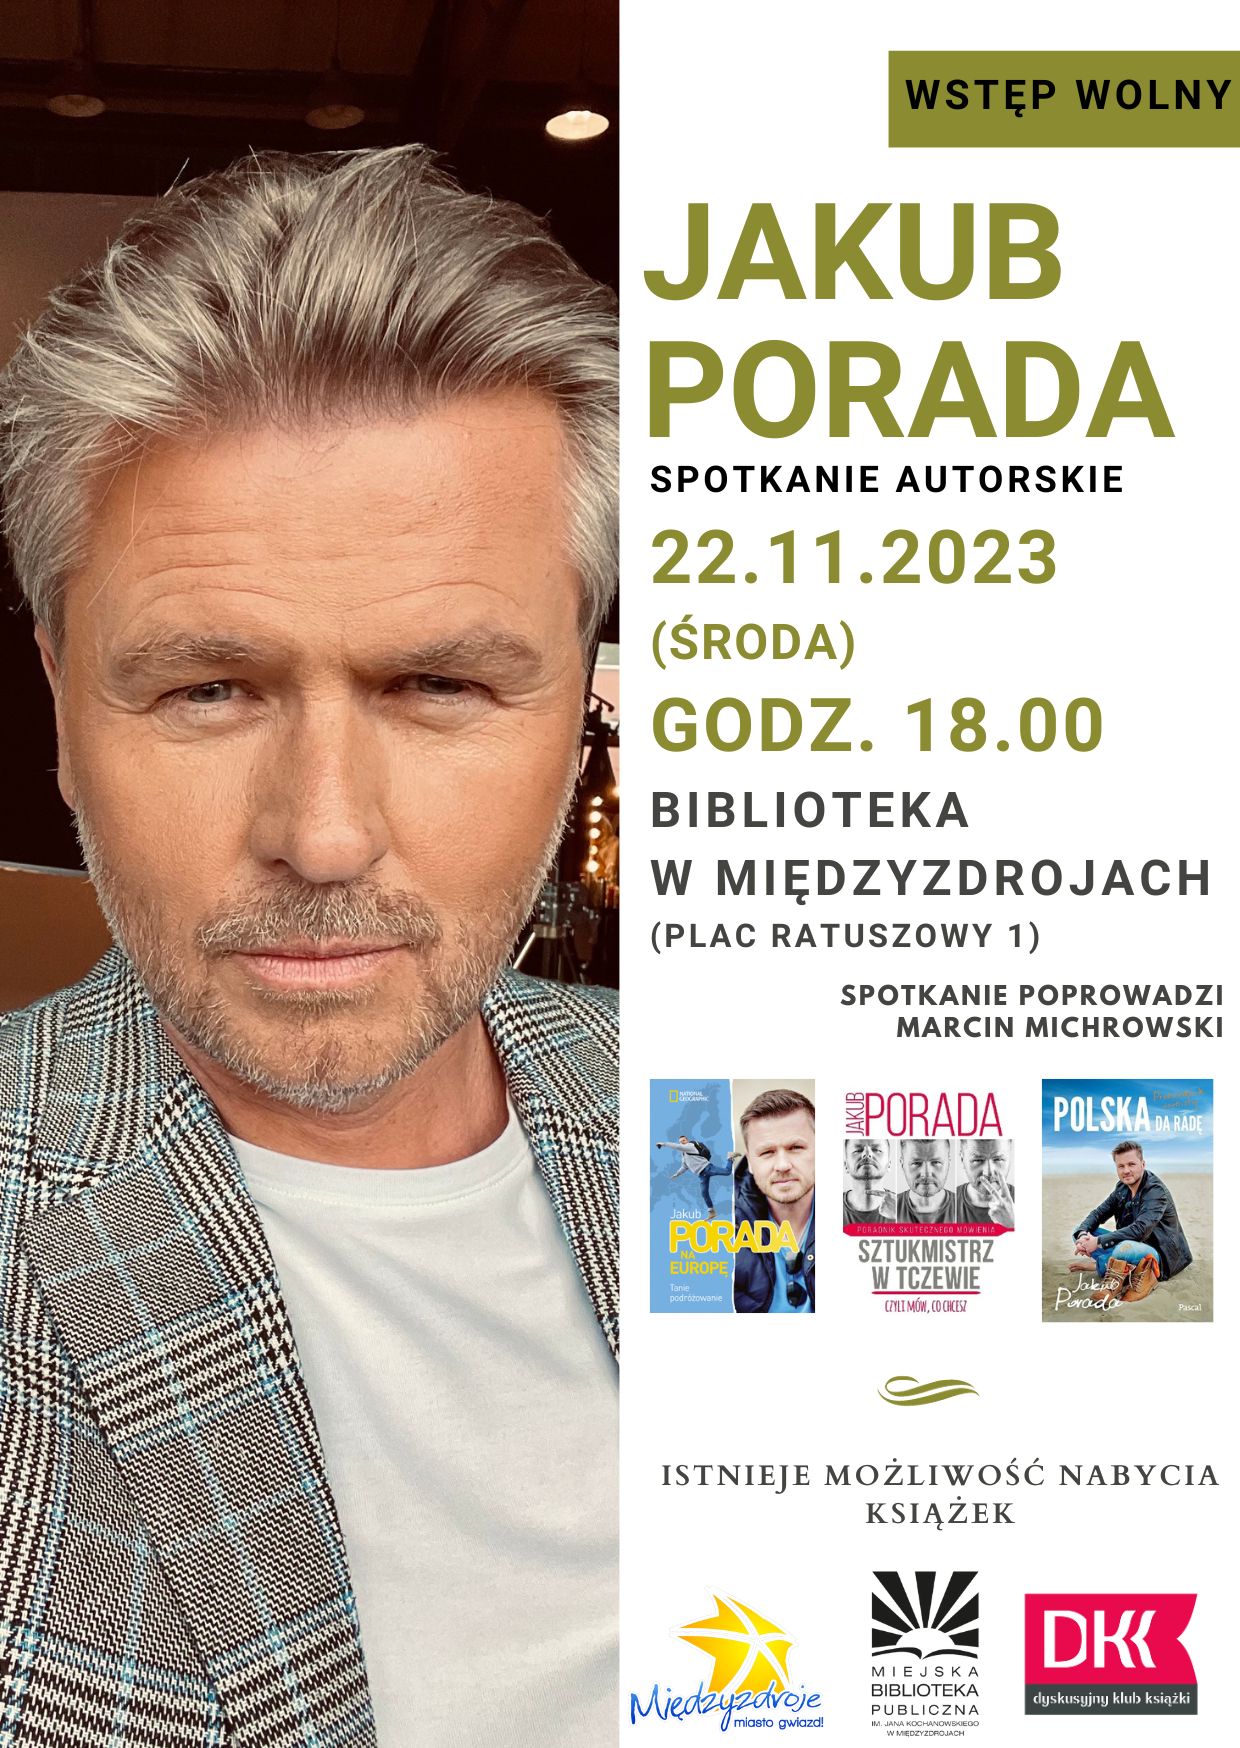 Jakub Porada – spotkanie autorskie w międzyzdrojskiej bibliotece - 22 listopada 2023 r.